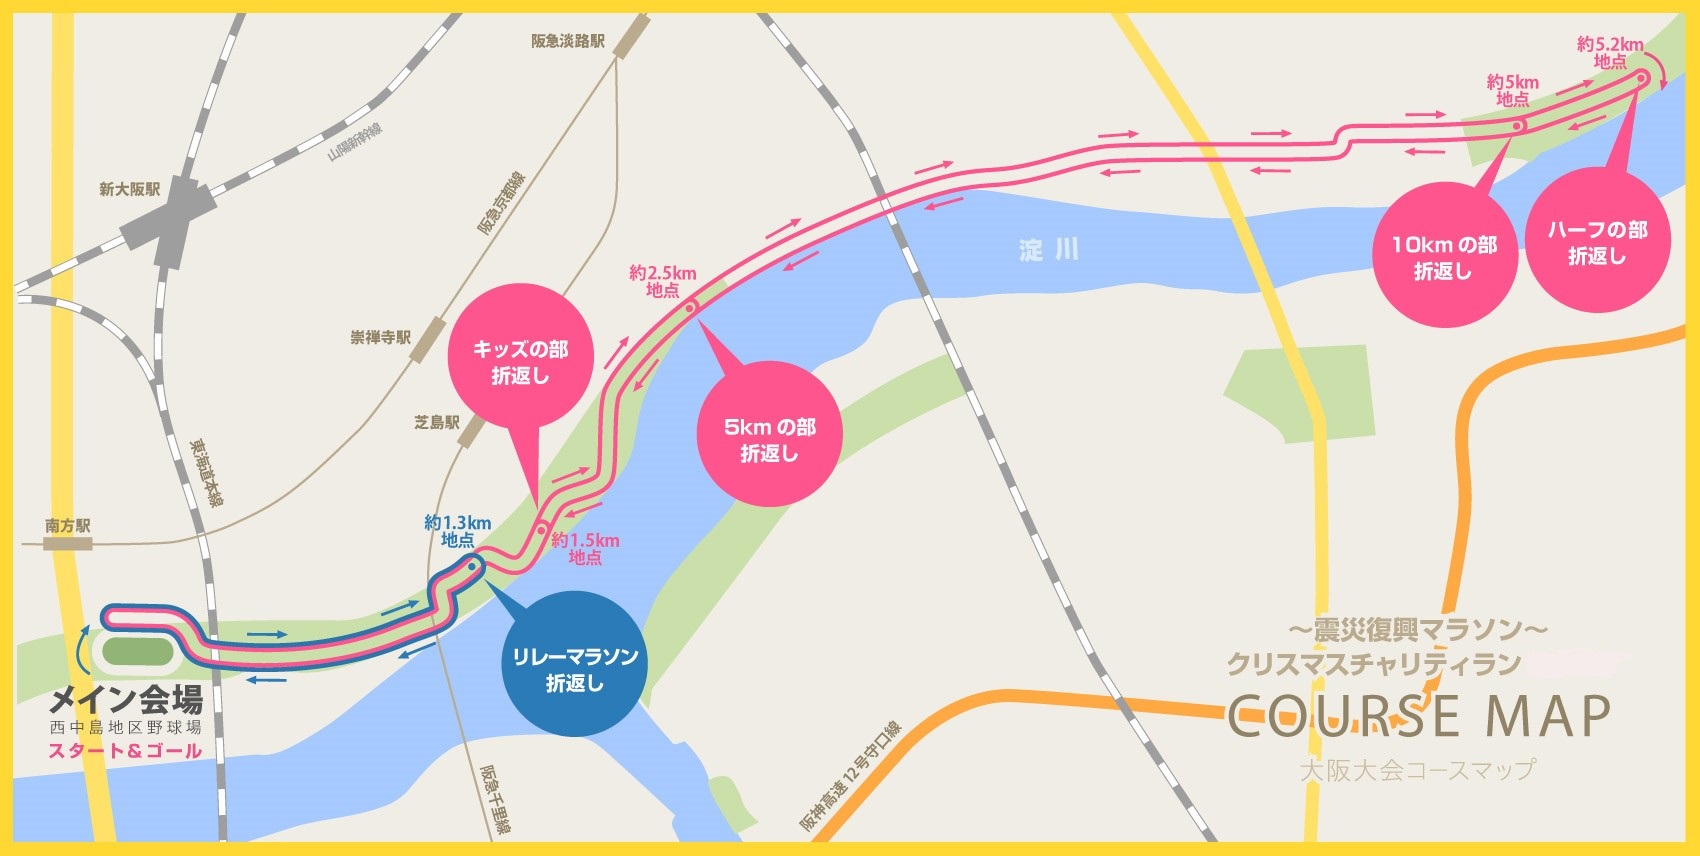 大阪大会 コースマップ ハーフマラソンリレーコース